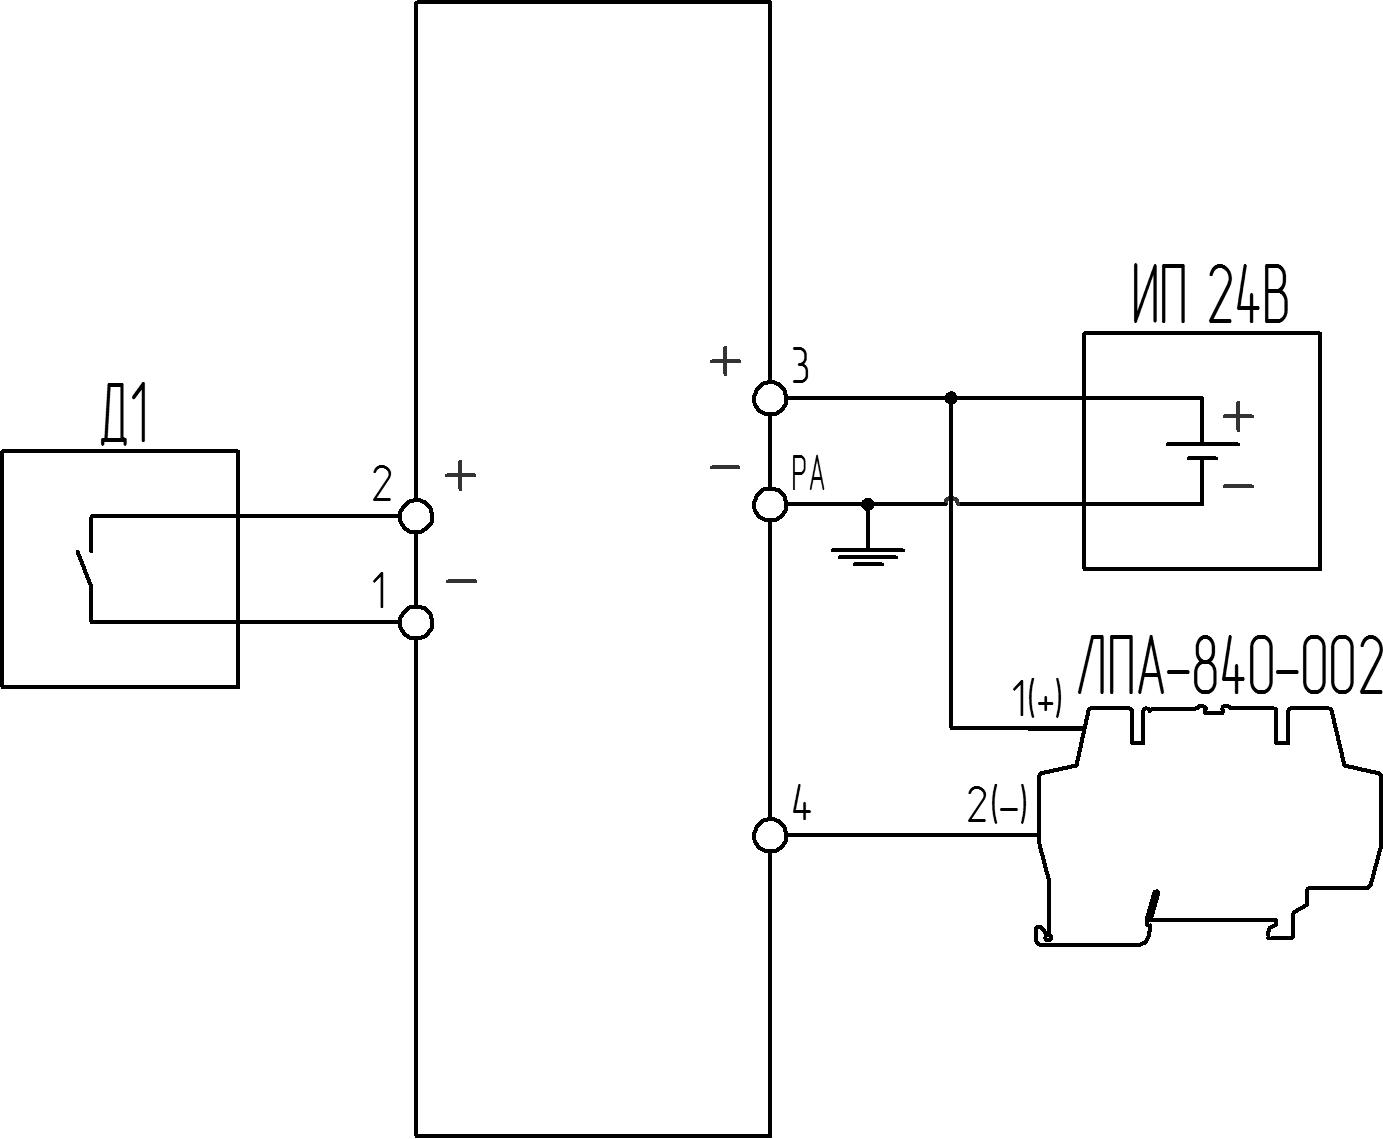 БИ-007 Схема подключения датчика «сухой контакт» и модуля ЛПА-840-002